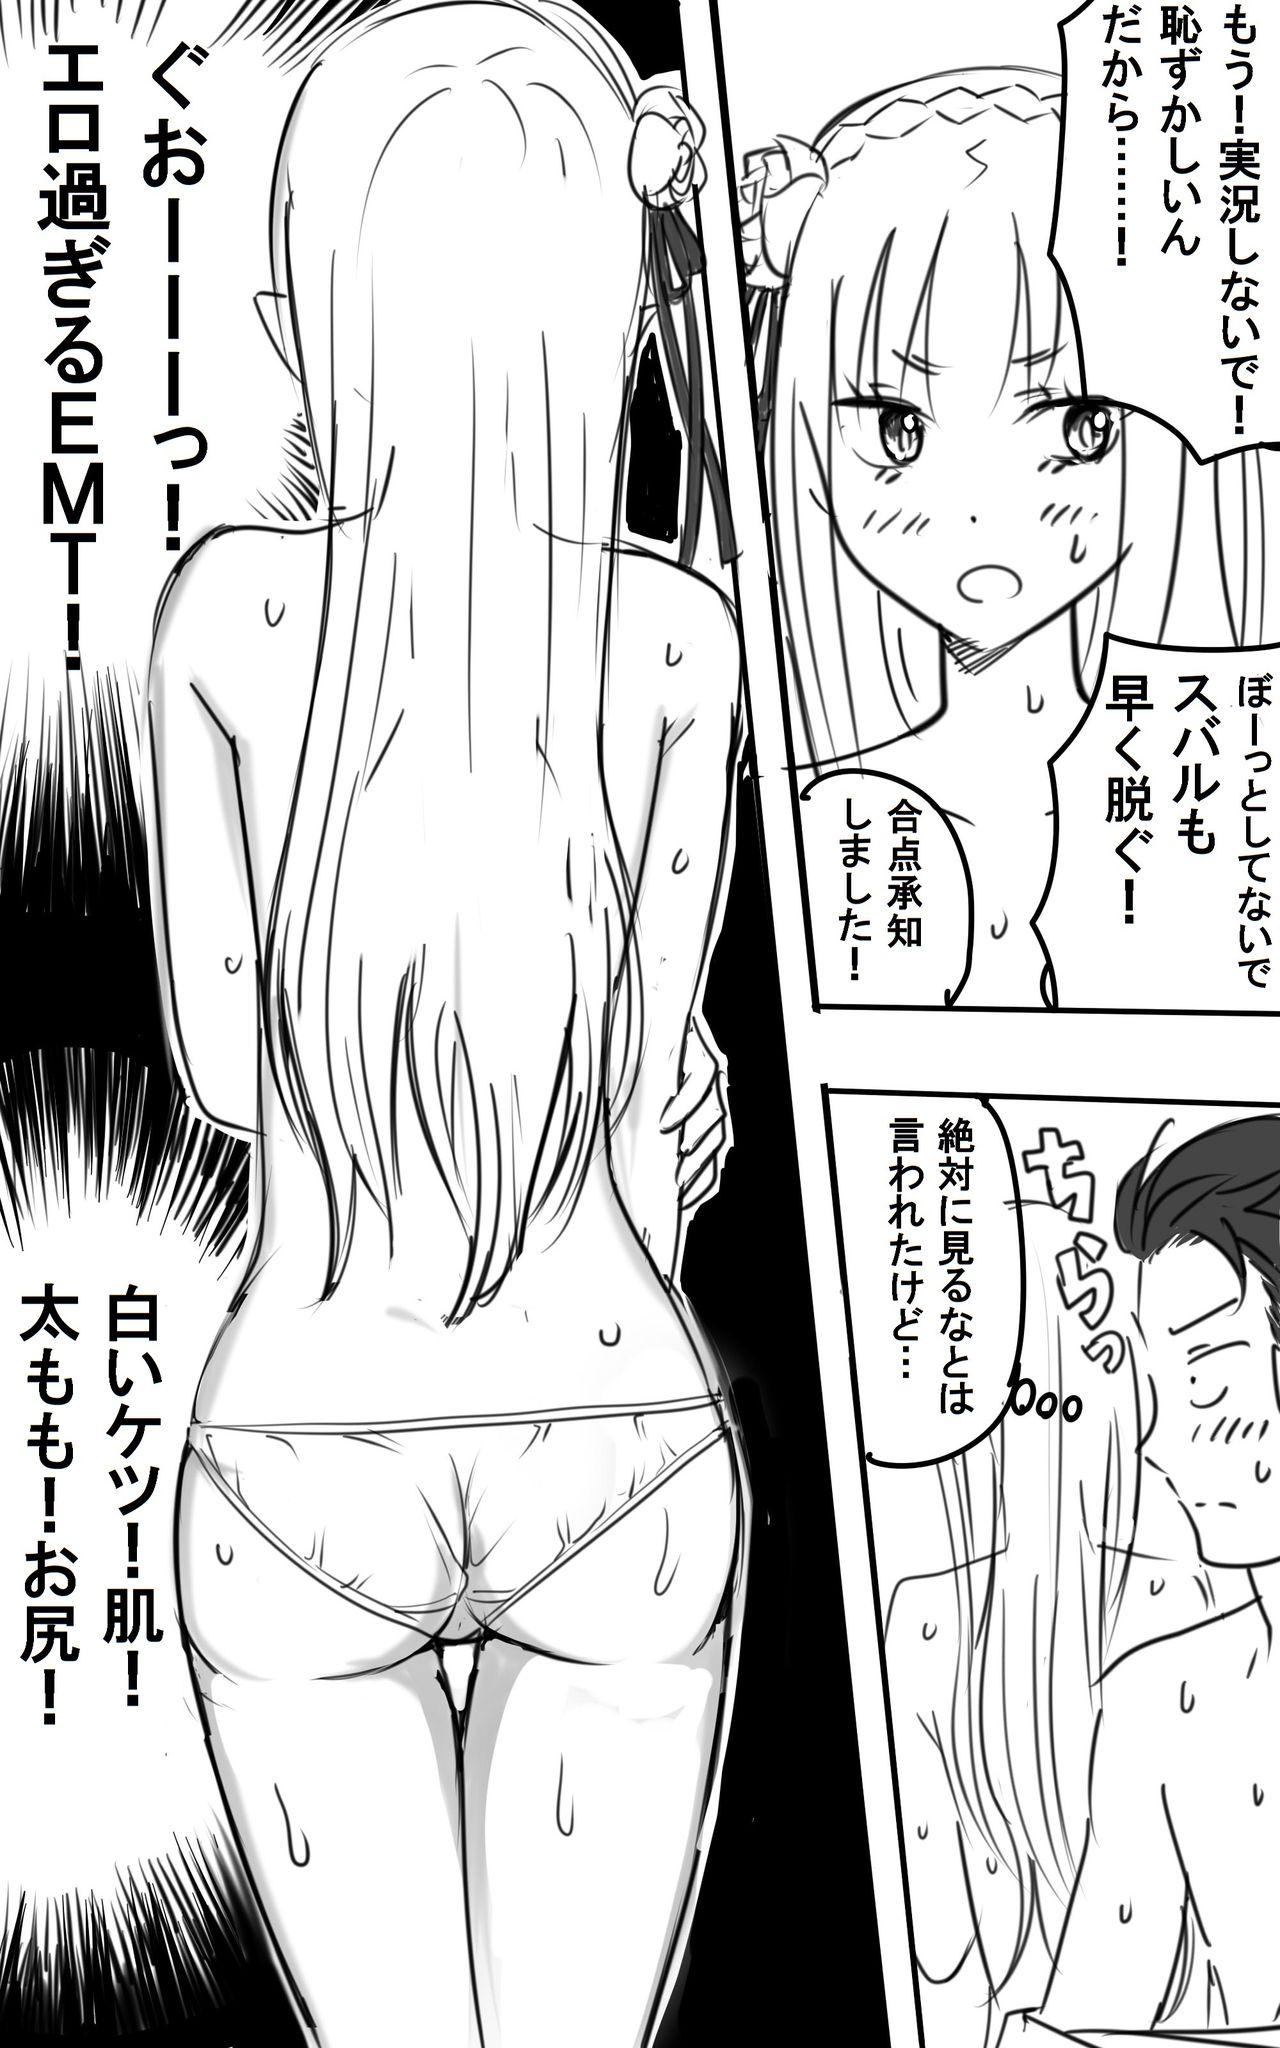 Cavala [NIJI-TERU] Emilia-tan to Sugooku Sex Sono 1-10 (Re:Zero kara Hajimeru Isekai Seikatsu) - Re zero kara hajimeru isekai seikatsu Foot Job - Page 7